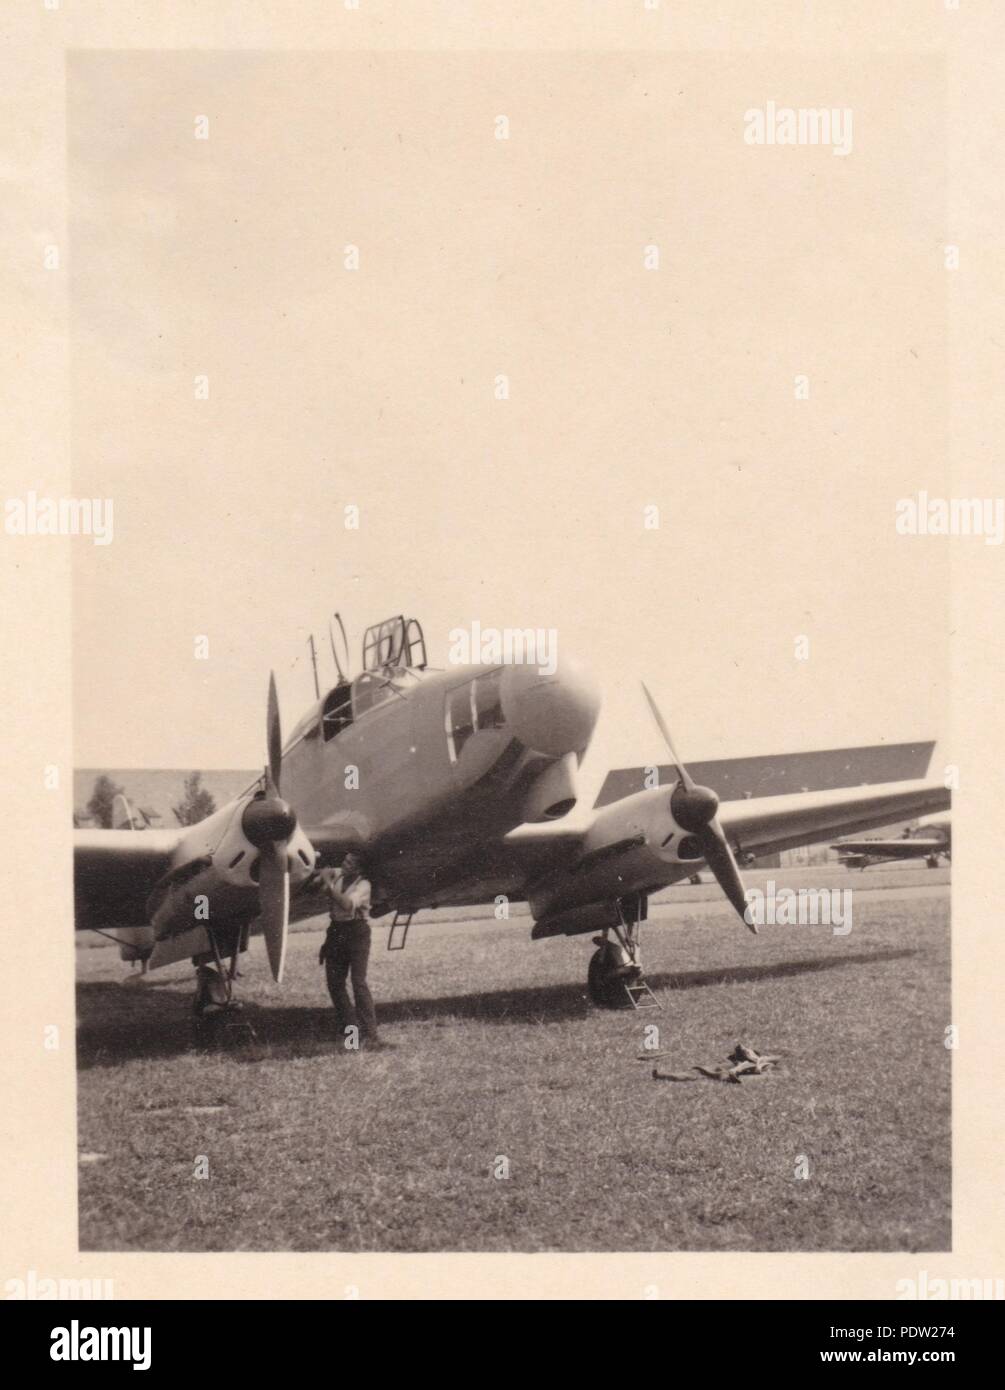 Bild aus dem Fotoalbum von Oberfeldwebel Karl gendner von 1. Staffel, Kampfgeschwader 40: eine Luftwaffe Focke Wulf FW 58 Weihe (Harrier), Doppel - Motor, multi-rolle Flugzeuge, macht Kontrollen bei einem deutschen Flugplatz. Stockfoto